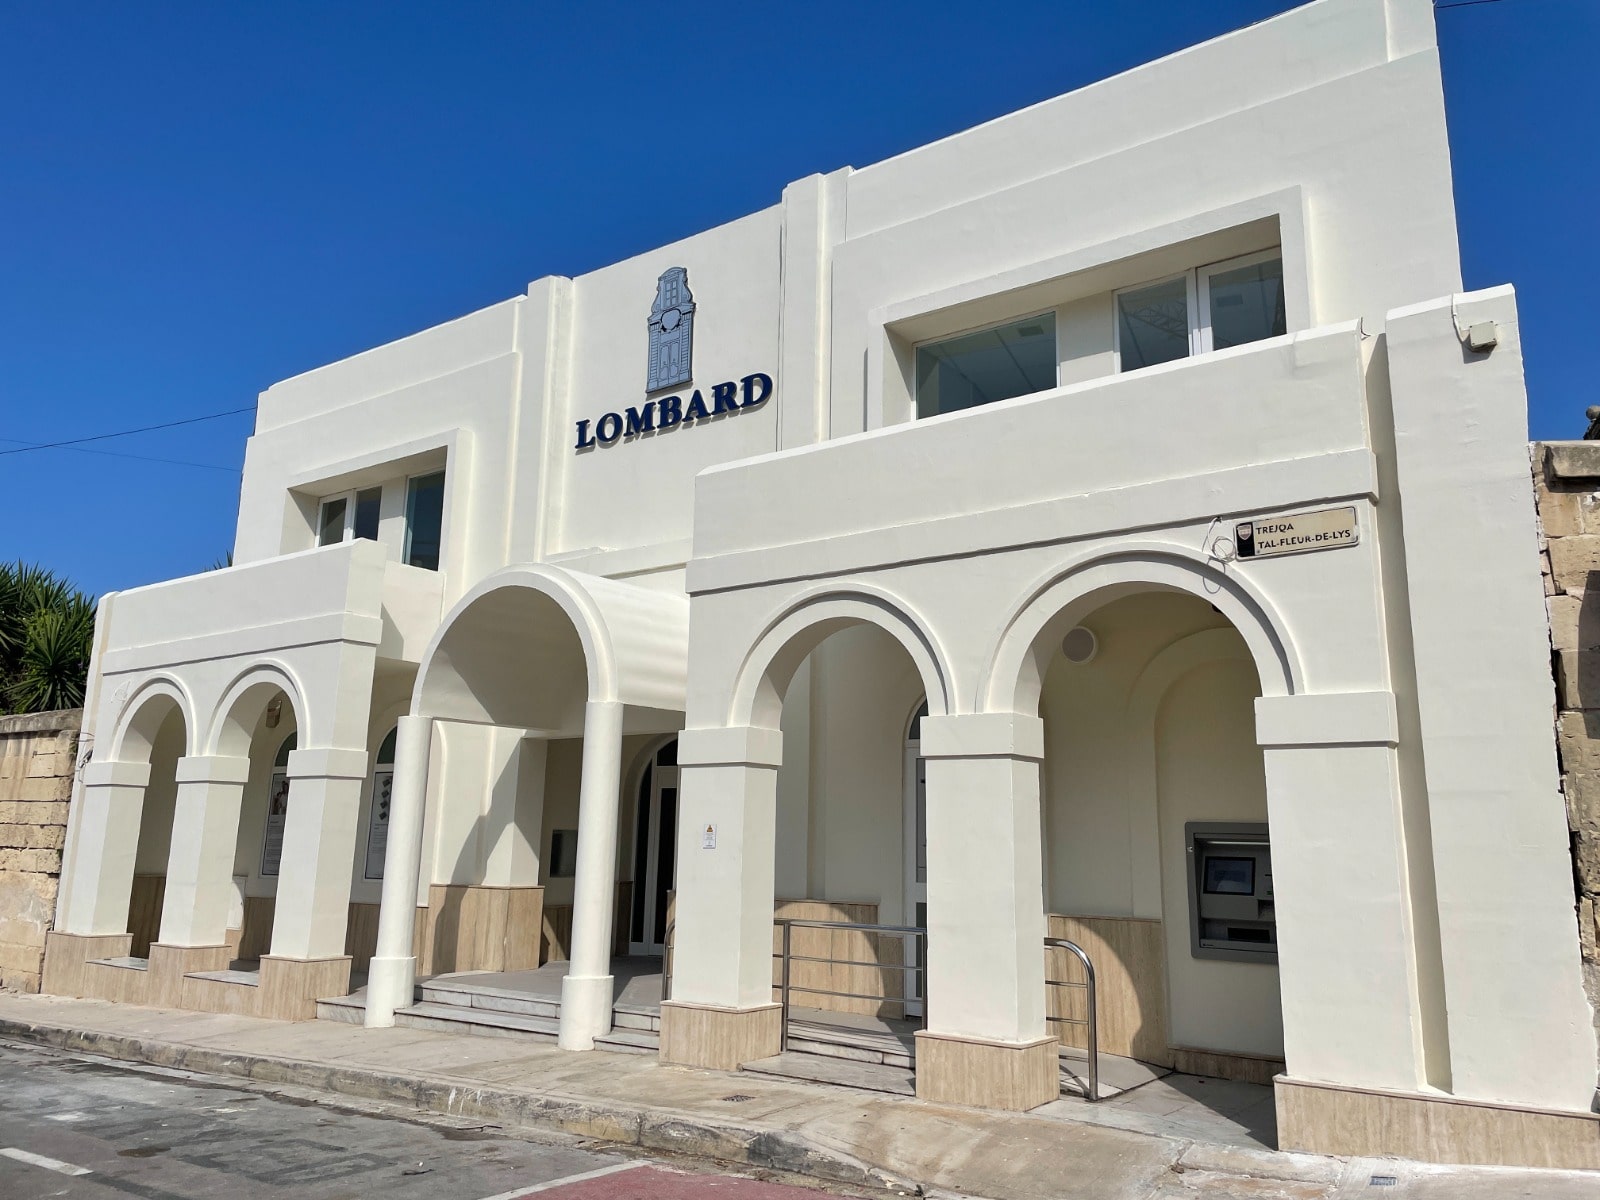 Lombard Bank